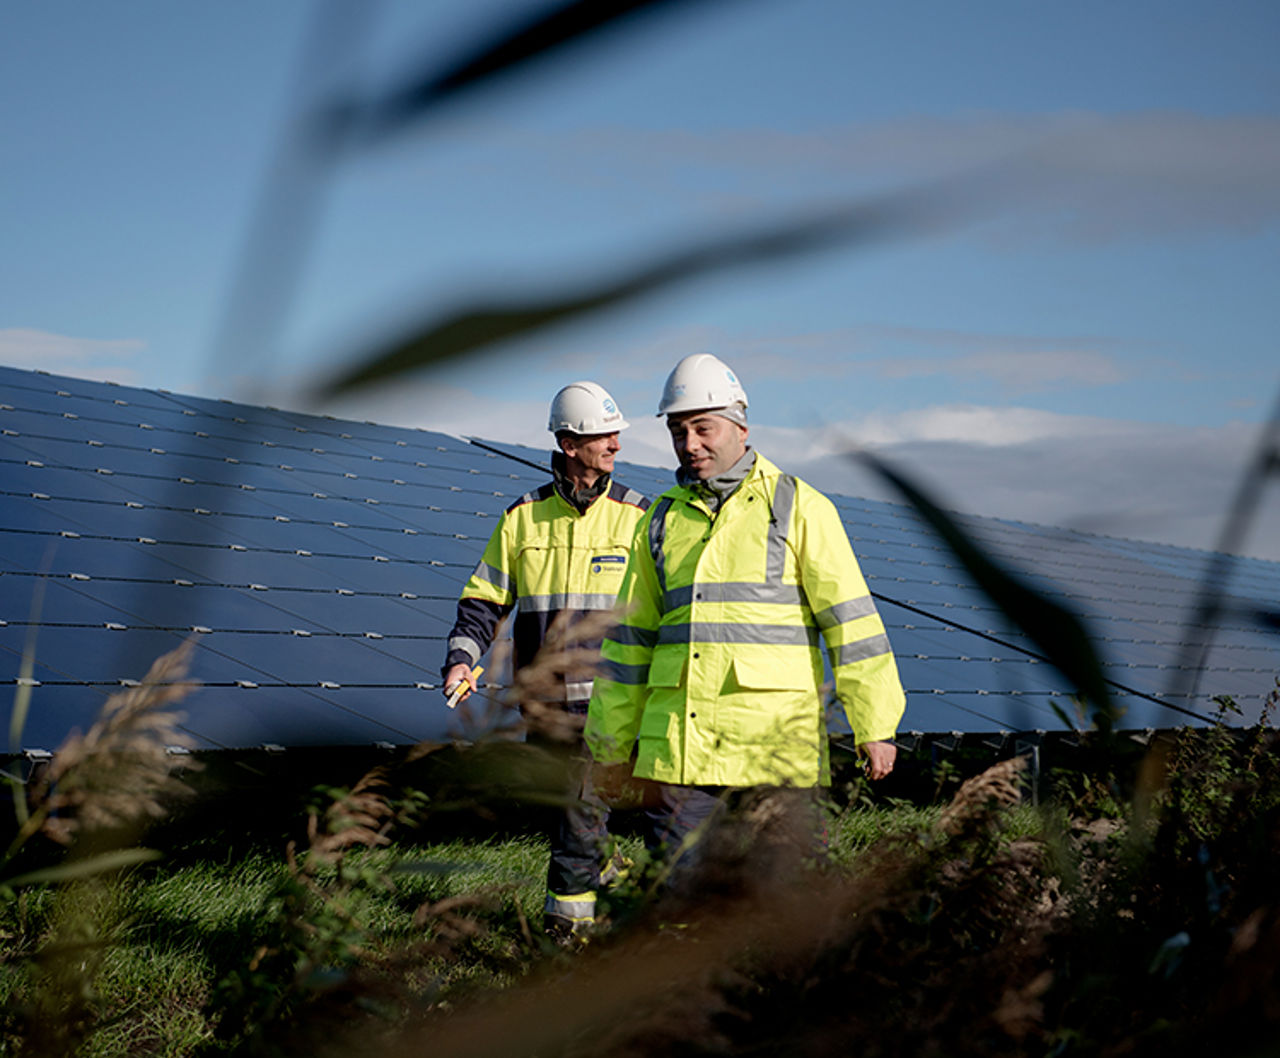 2 Mitarbeiter von Statkraft in Schutzkleidung laufen durch einen Solarpark